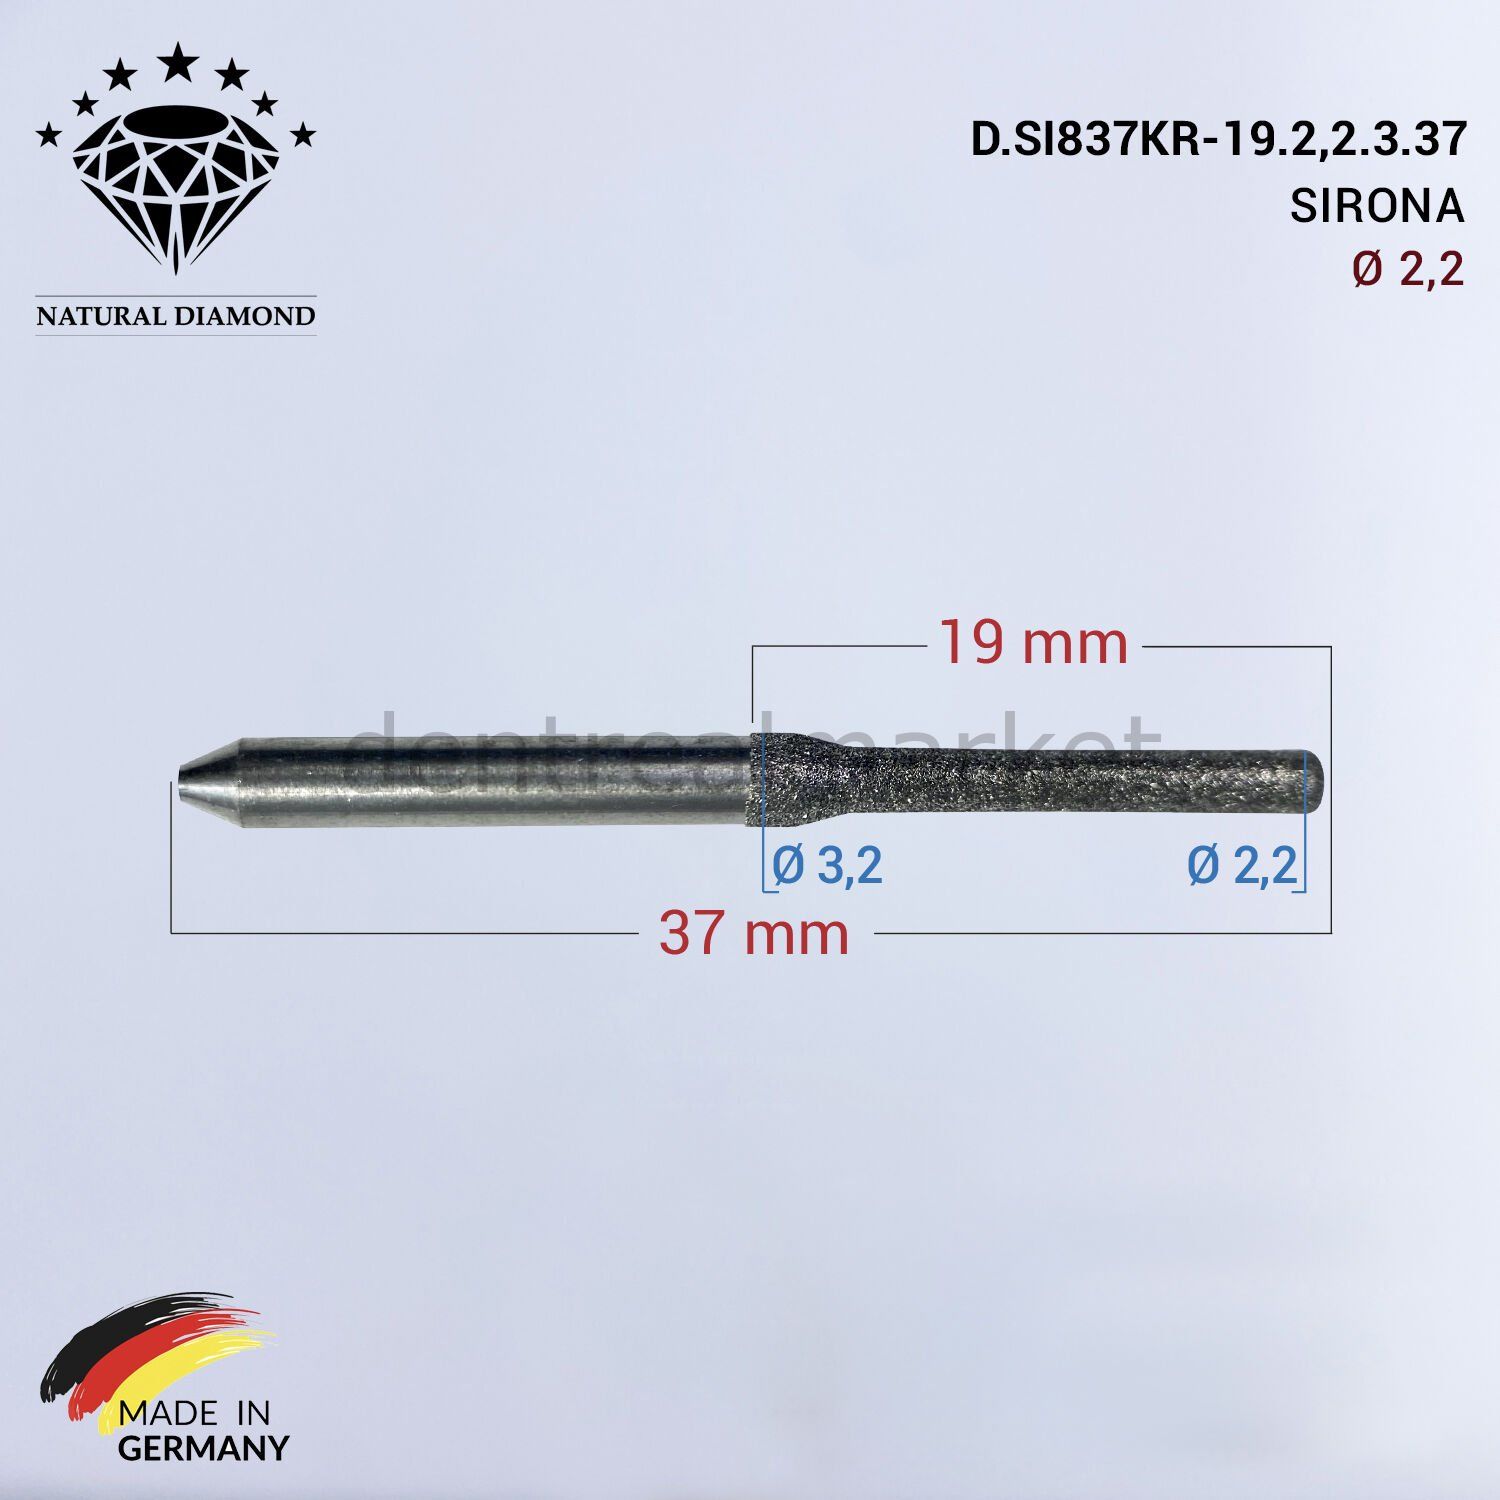 SIRONA Elmas Cad Cam Drill 2,0 mm